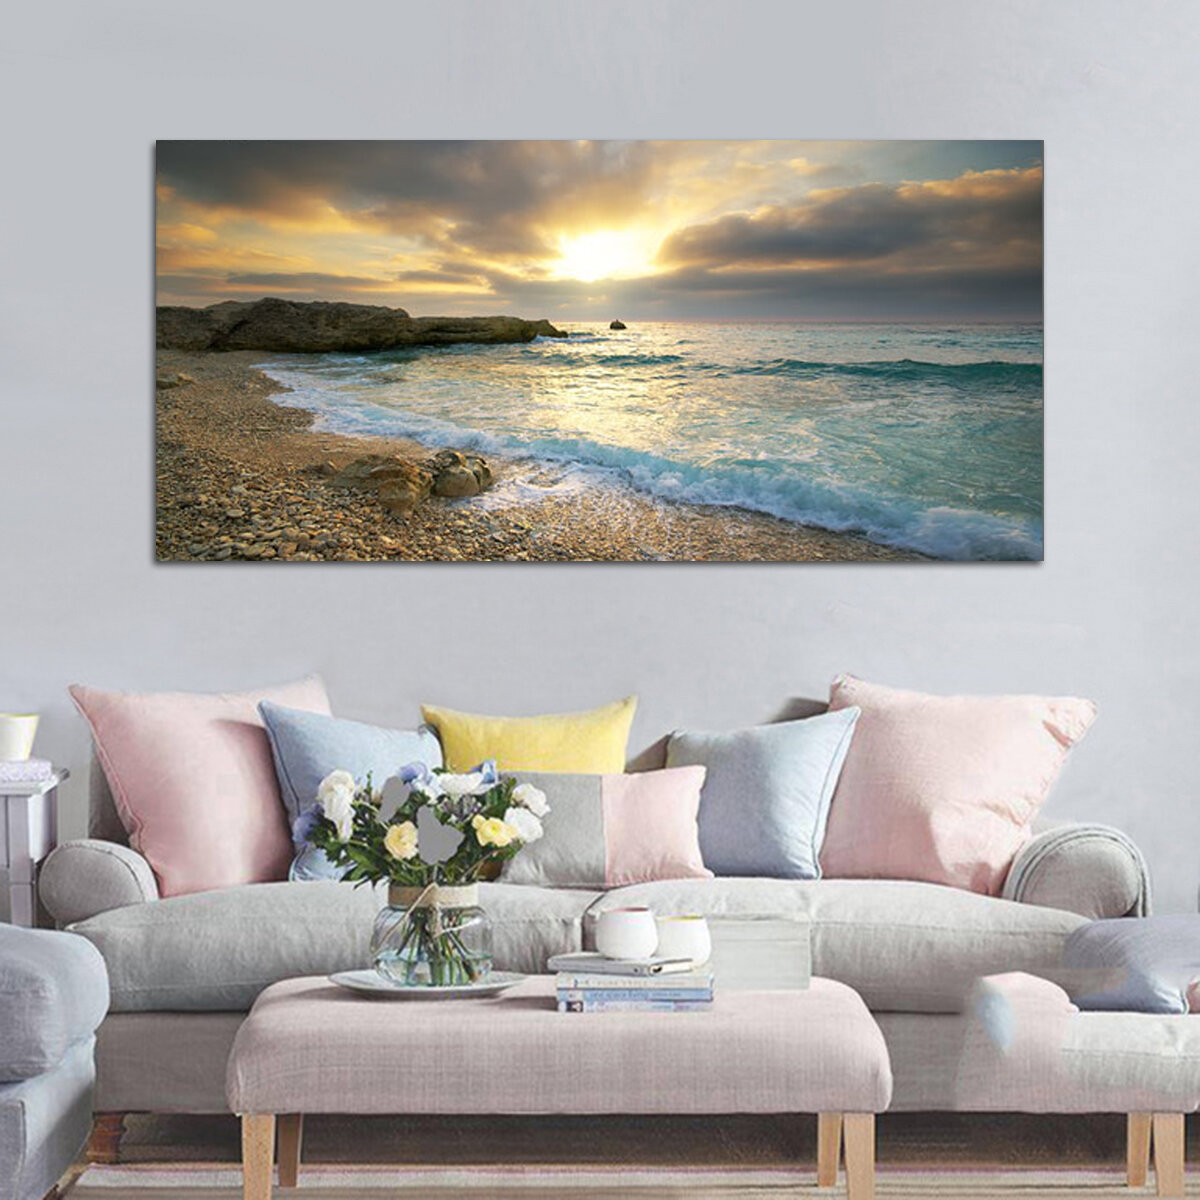 

Пляжный Холст Печать Ocean Wave Sunset Sea No Frame Картины Art Wall Home Decor